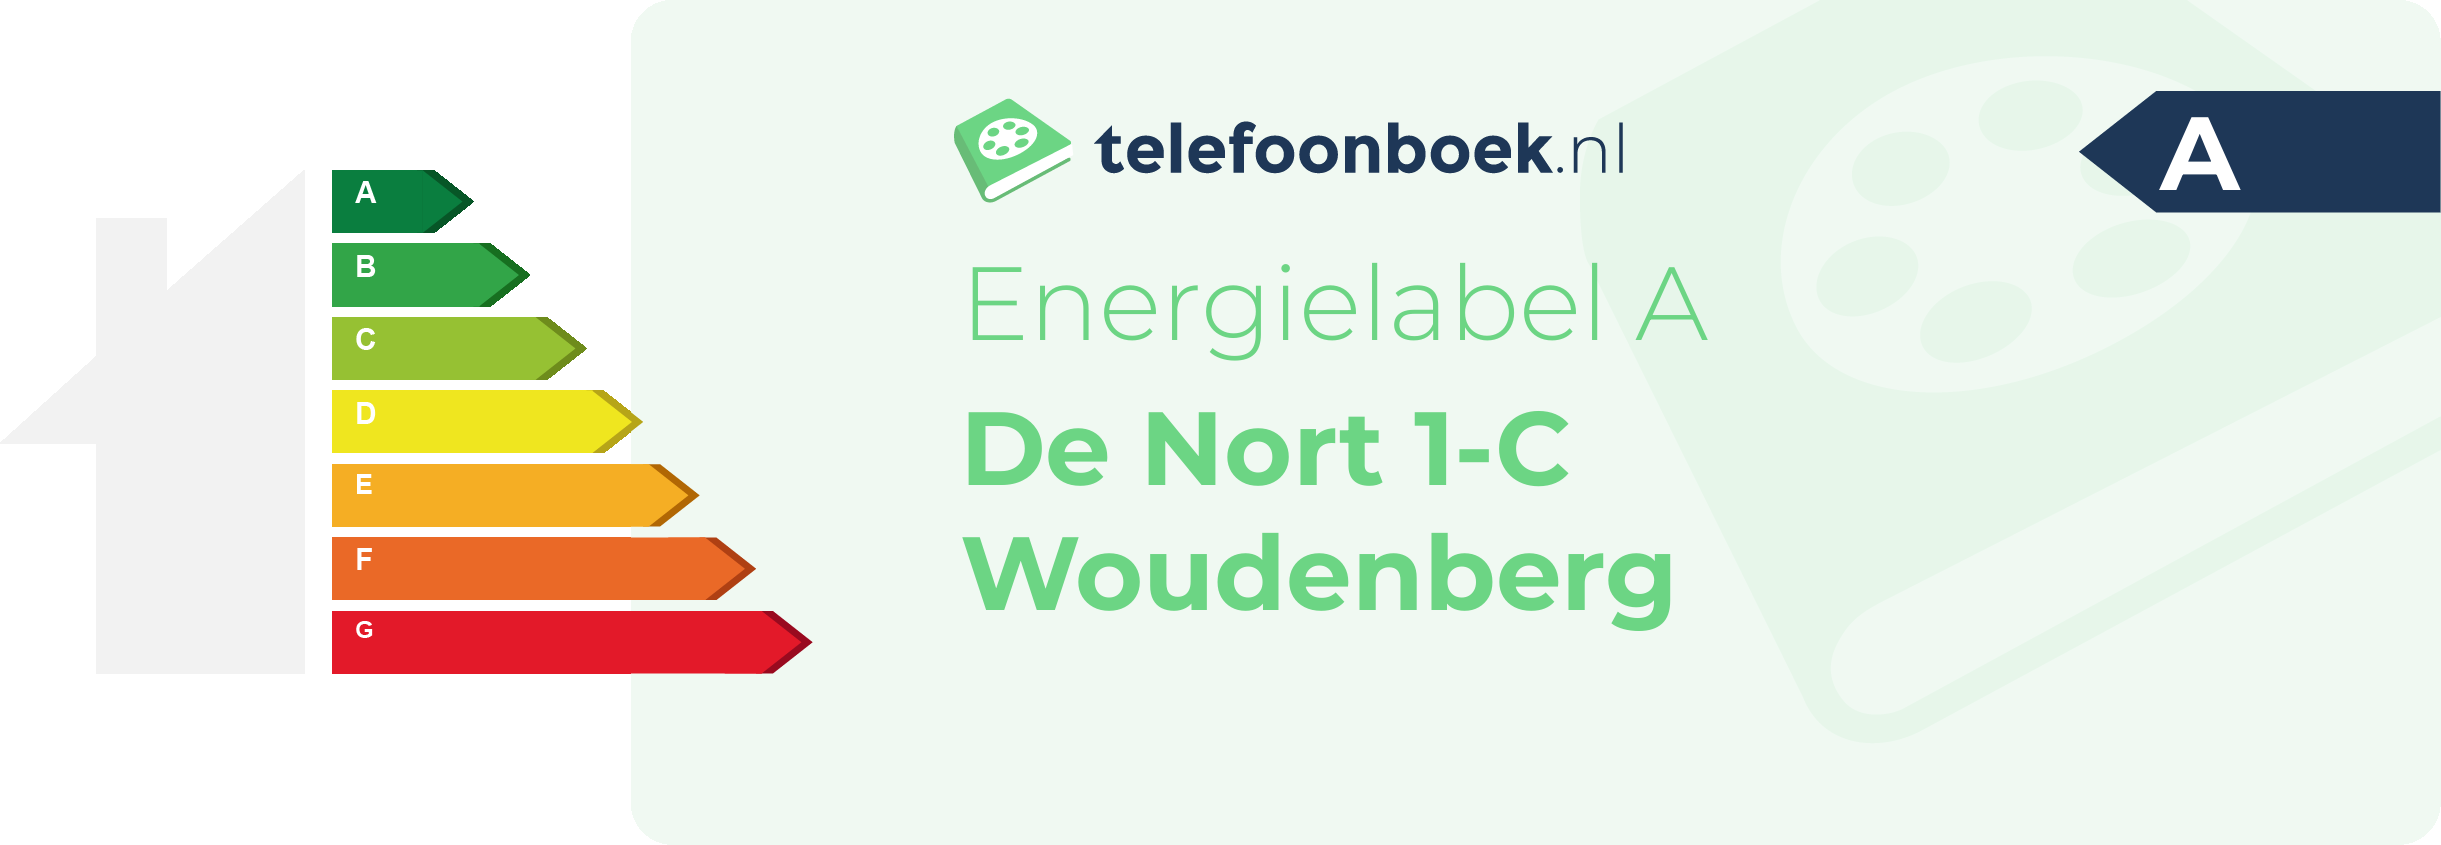 Energielabel De Nort 1-C Woudenberg